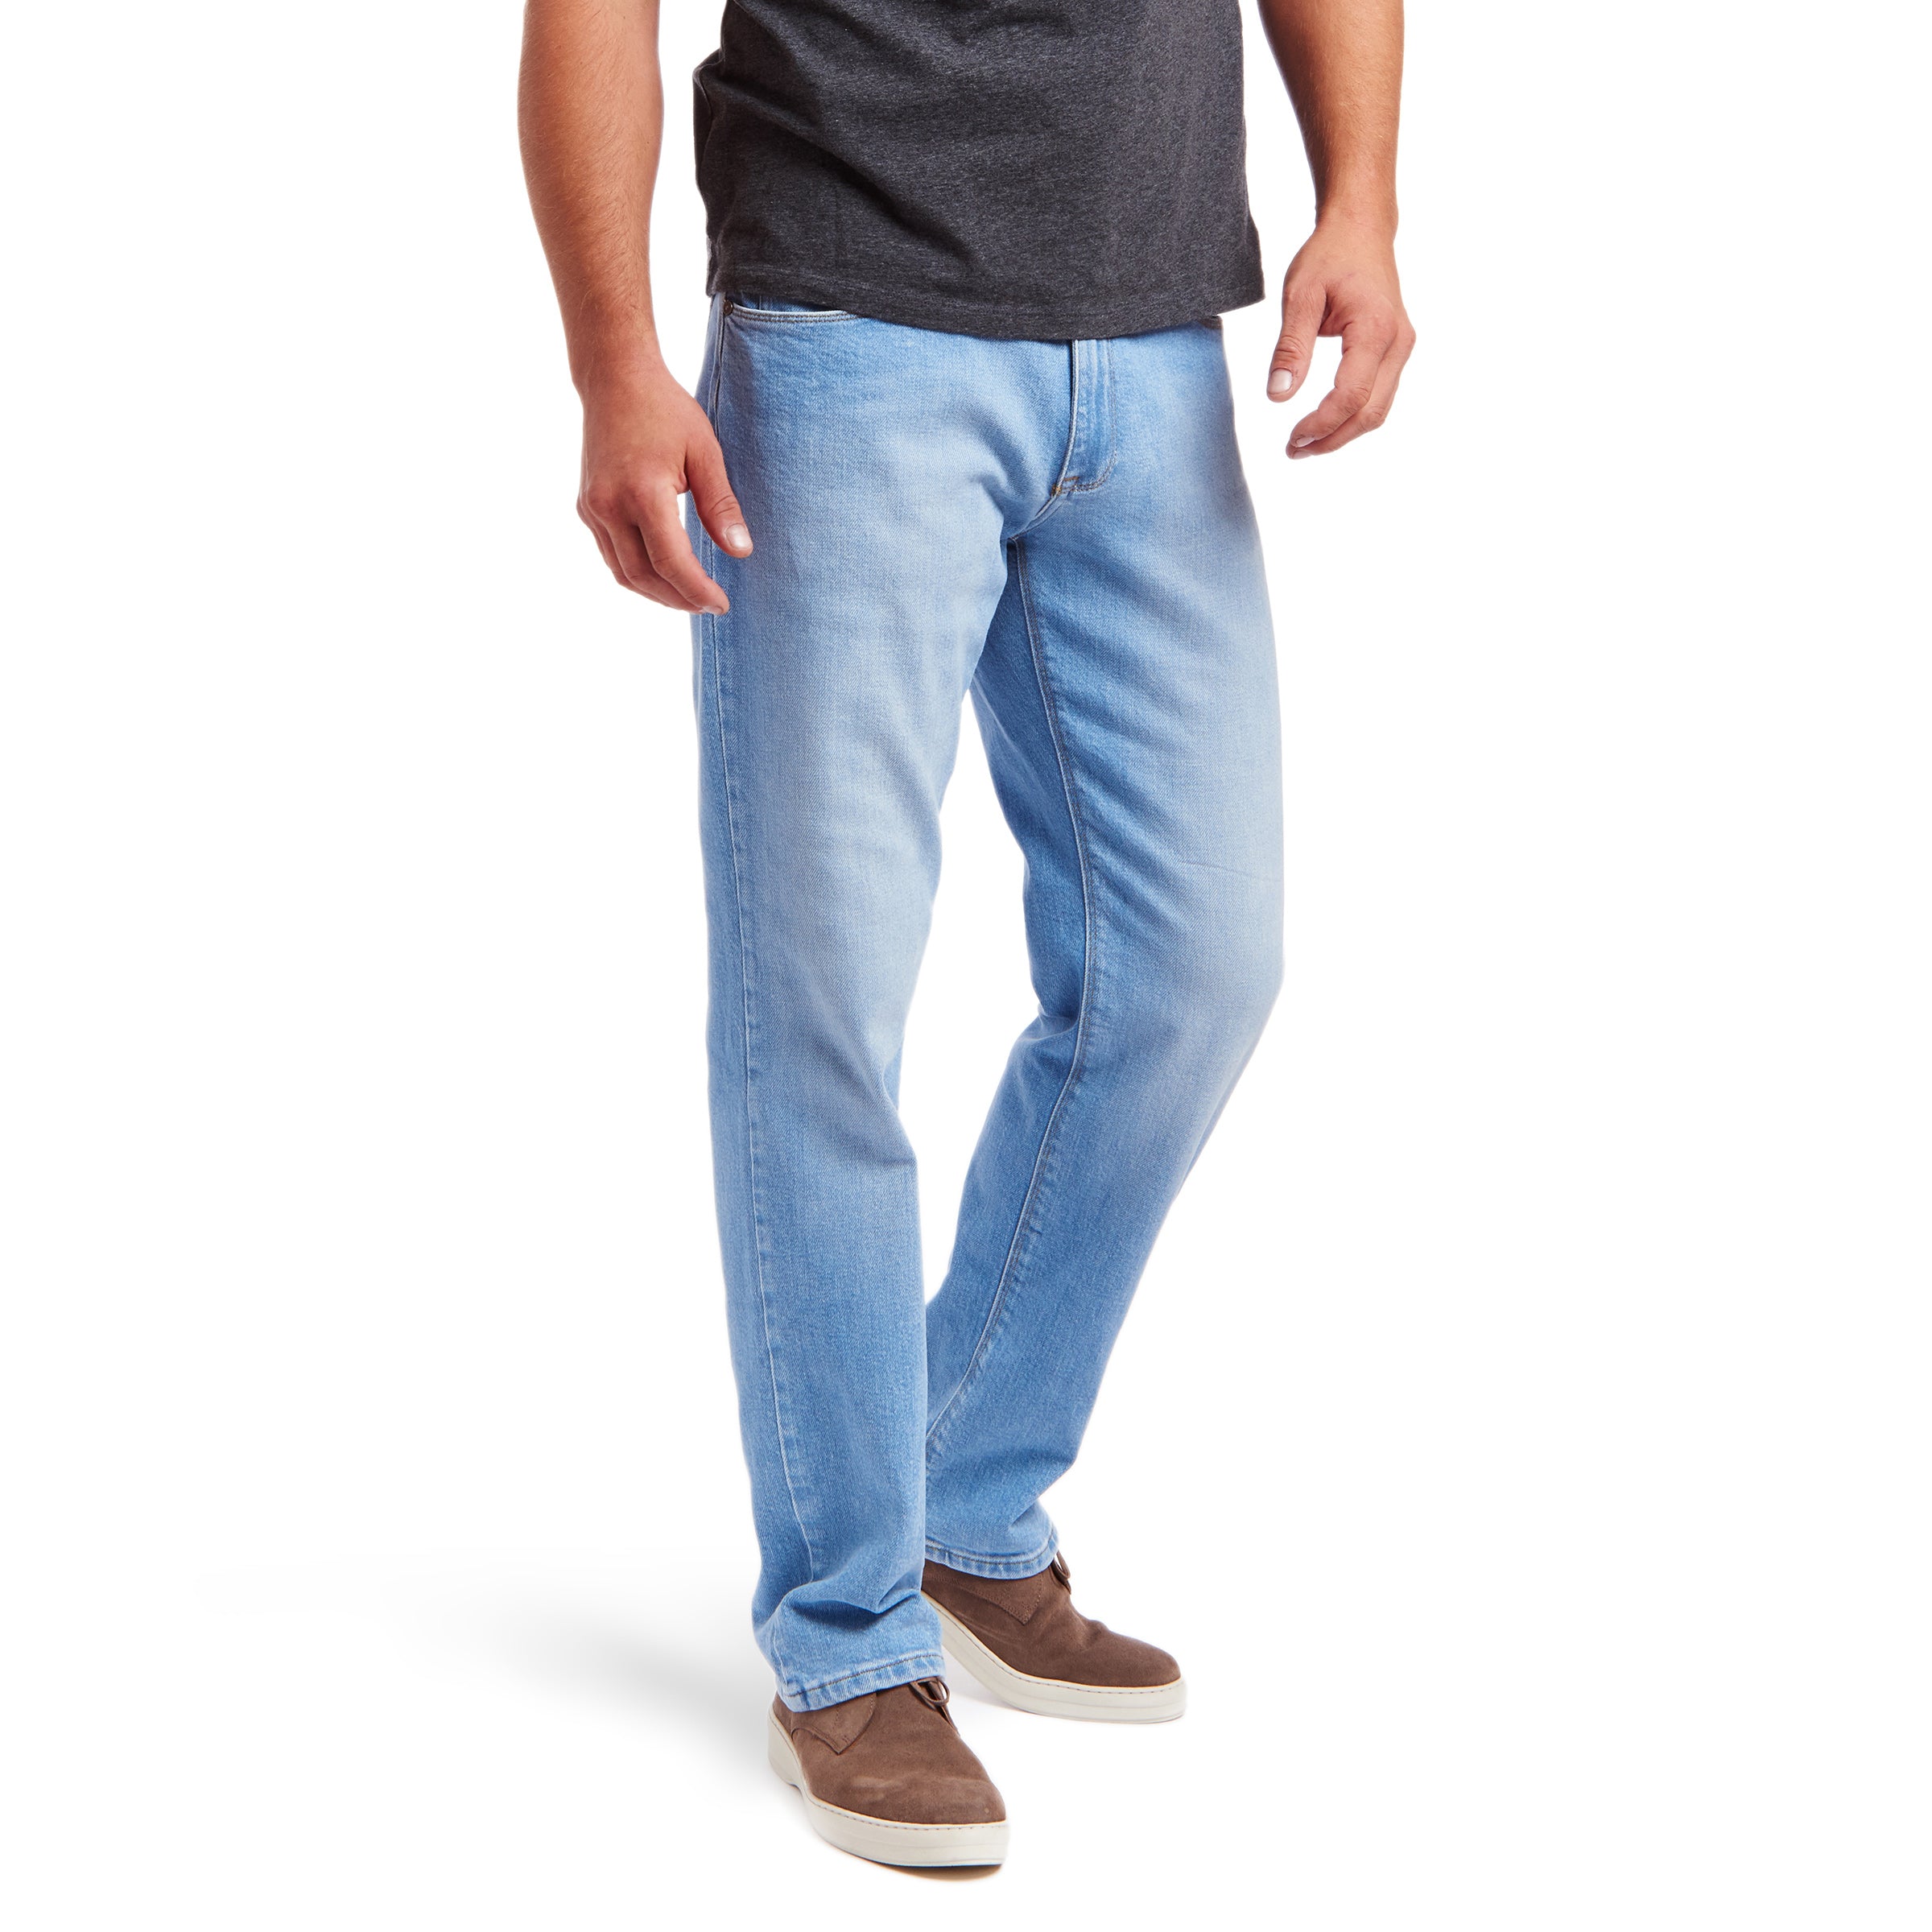 Men wearing Bleu Clair Straight Hubert Jeans